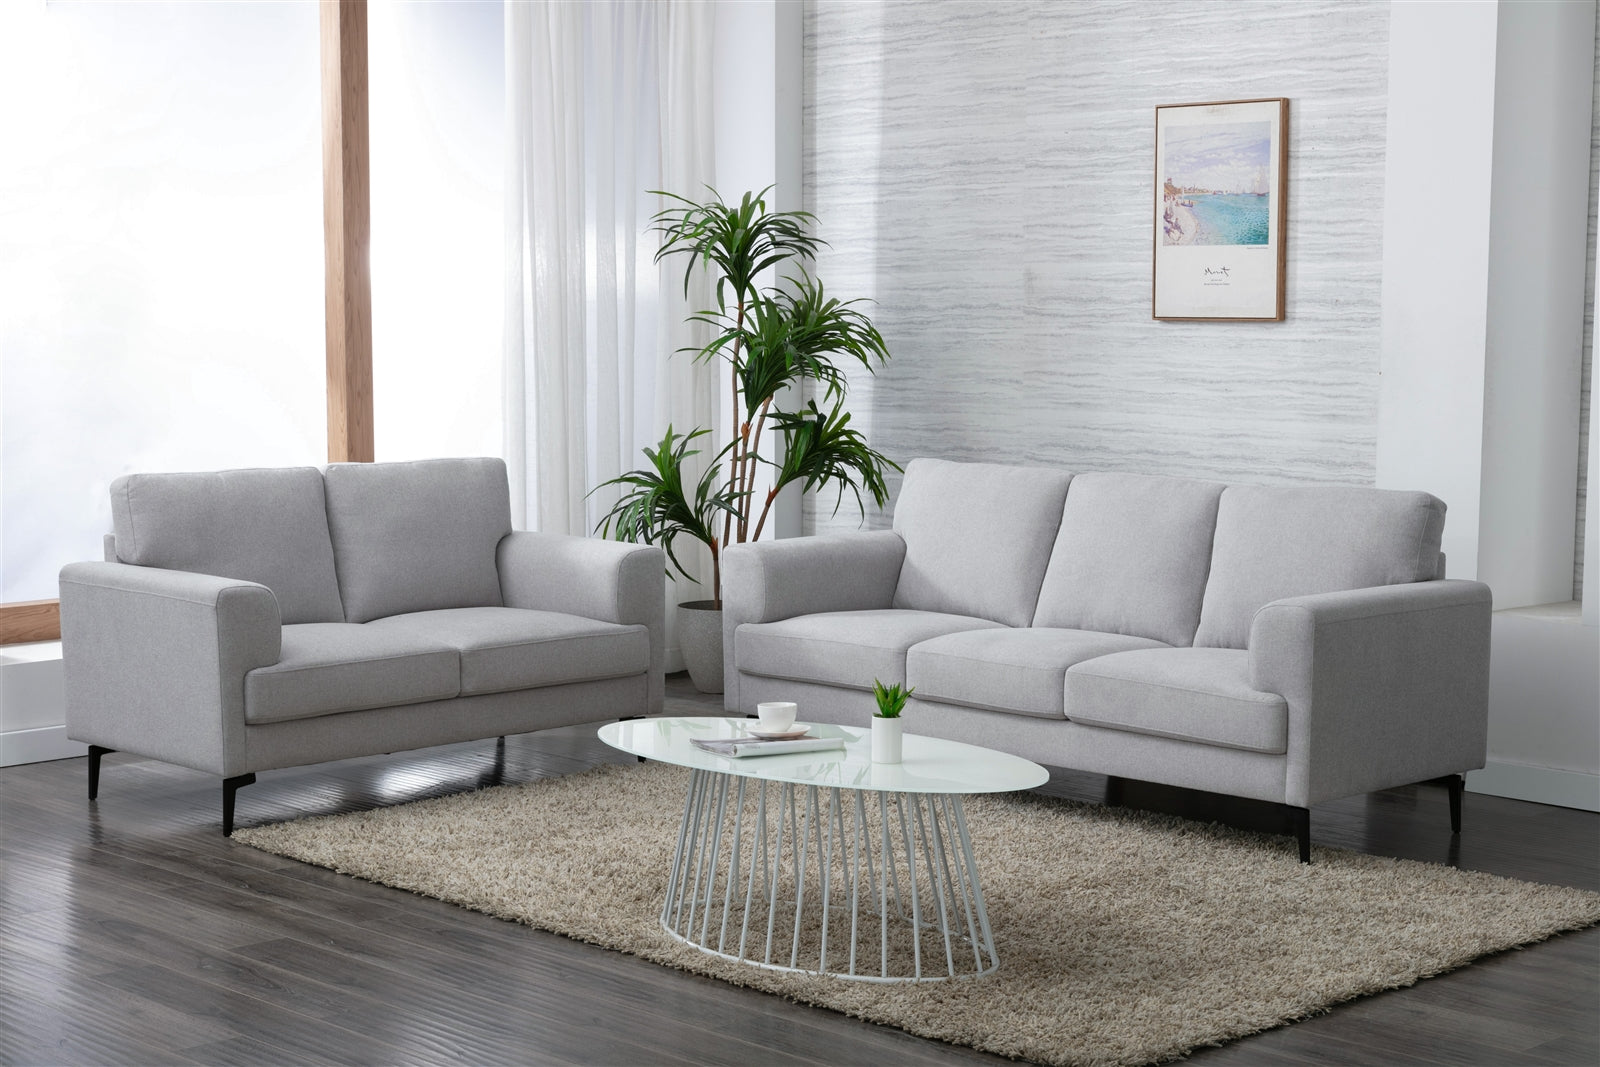 Kyrene Upholstered Sofa in Light Gray Linen - ACME 5692